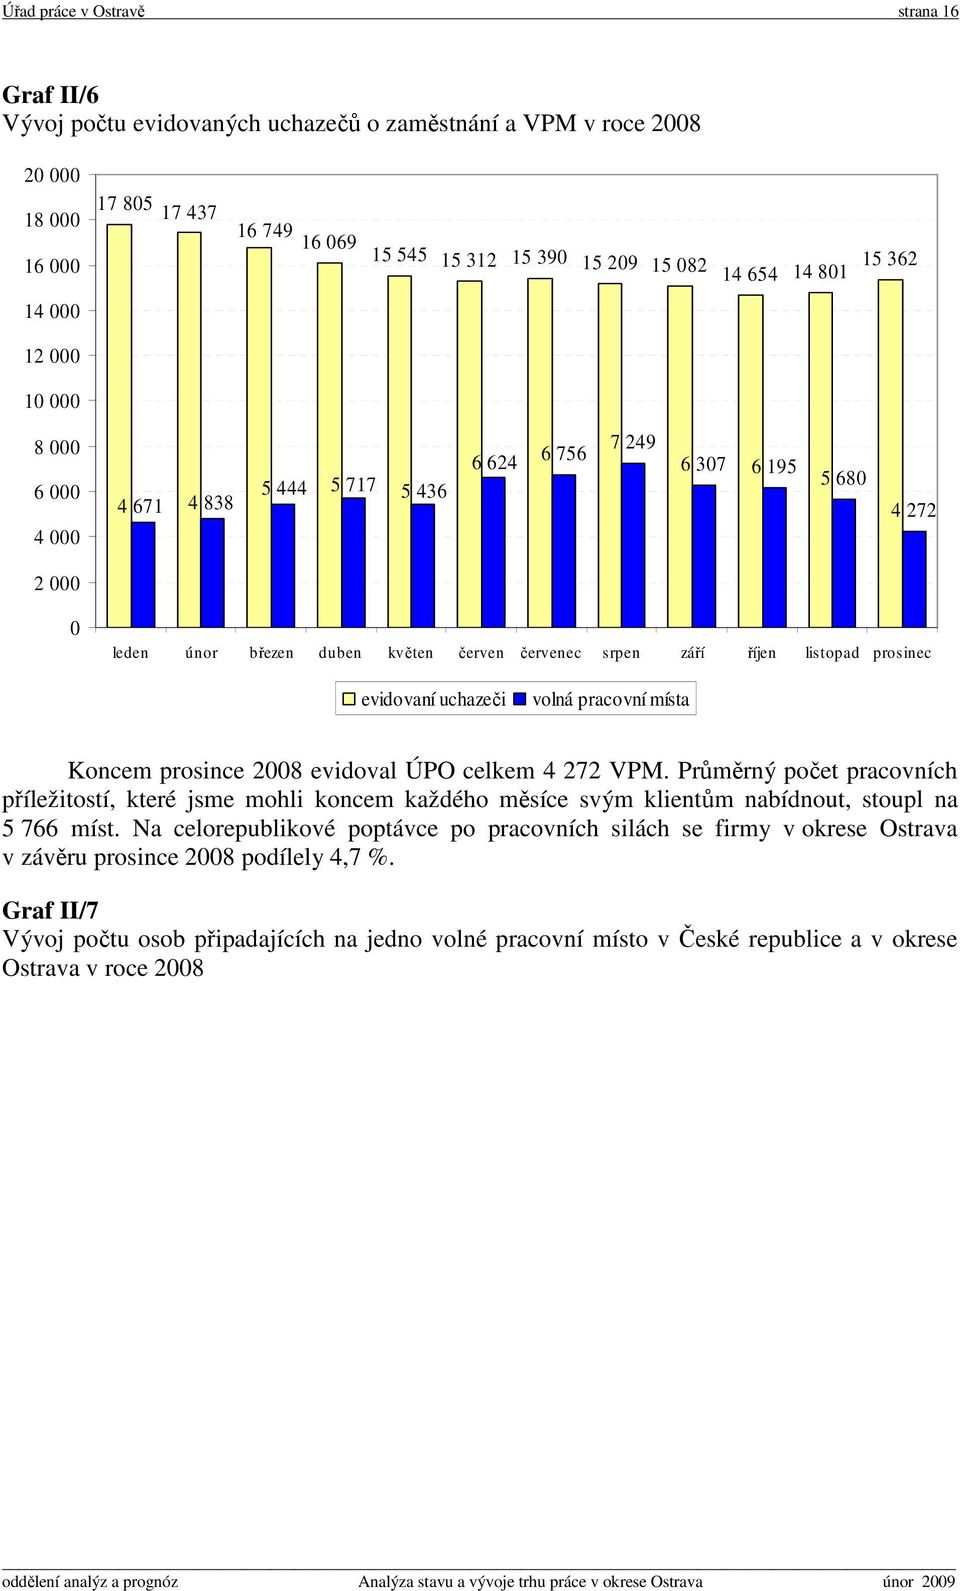 listopad prosinec evidovaní uchazeči volná pracovní místa Koncem prosince 2008 evidoval ÚPO celkem 4 272 VPM.